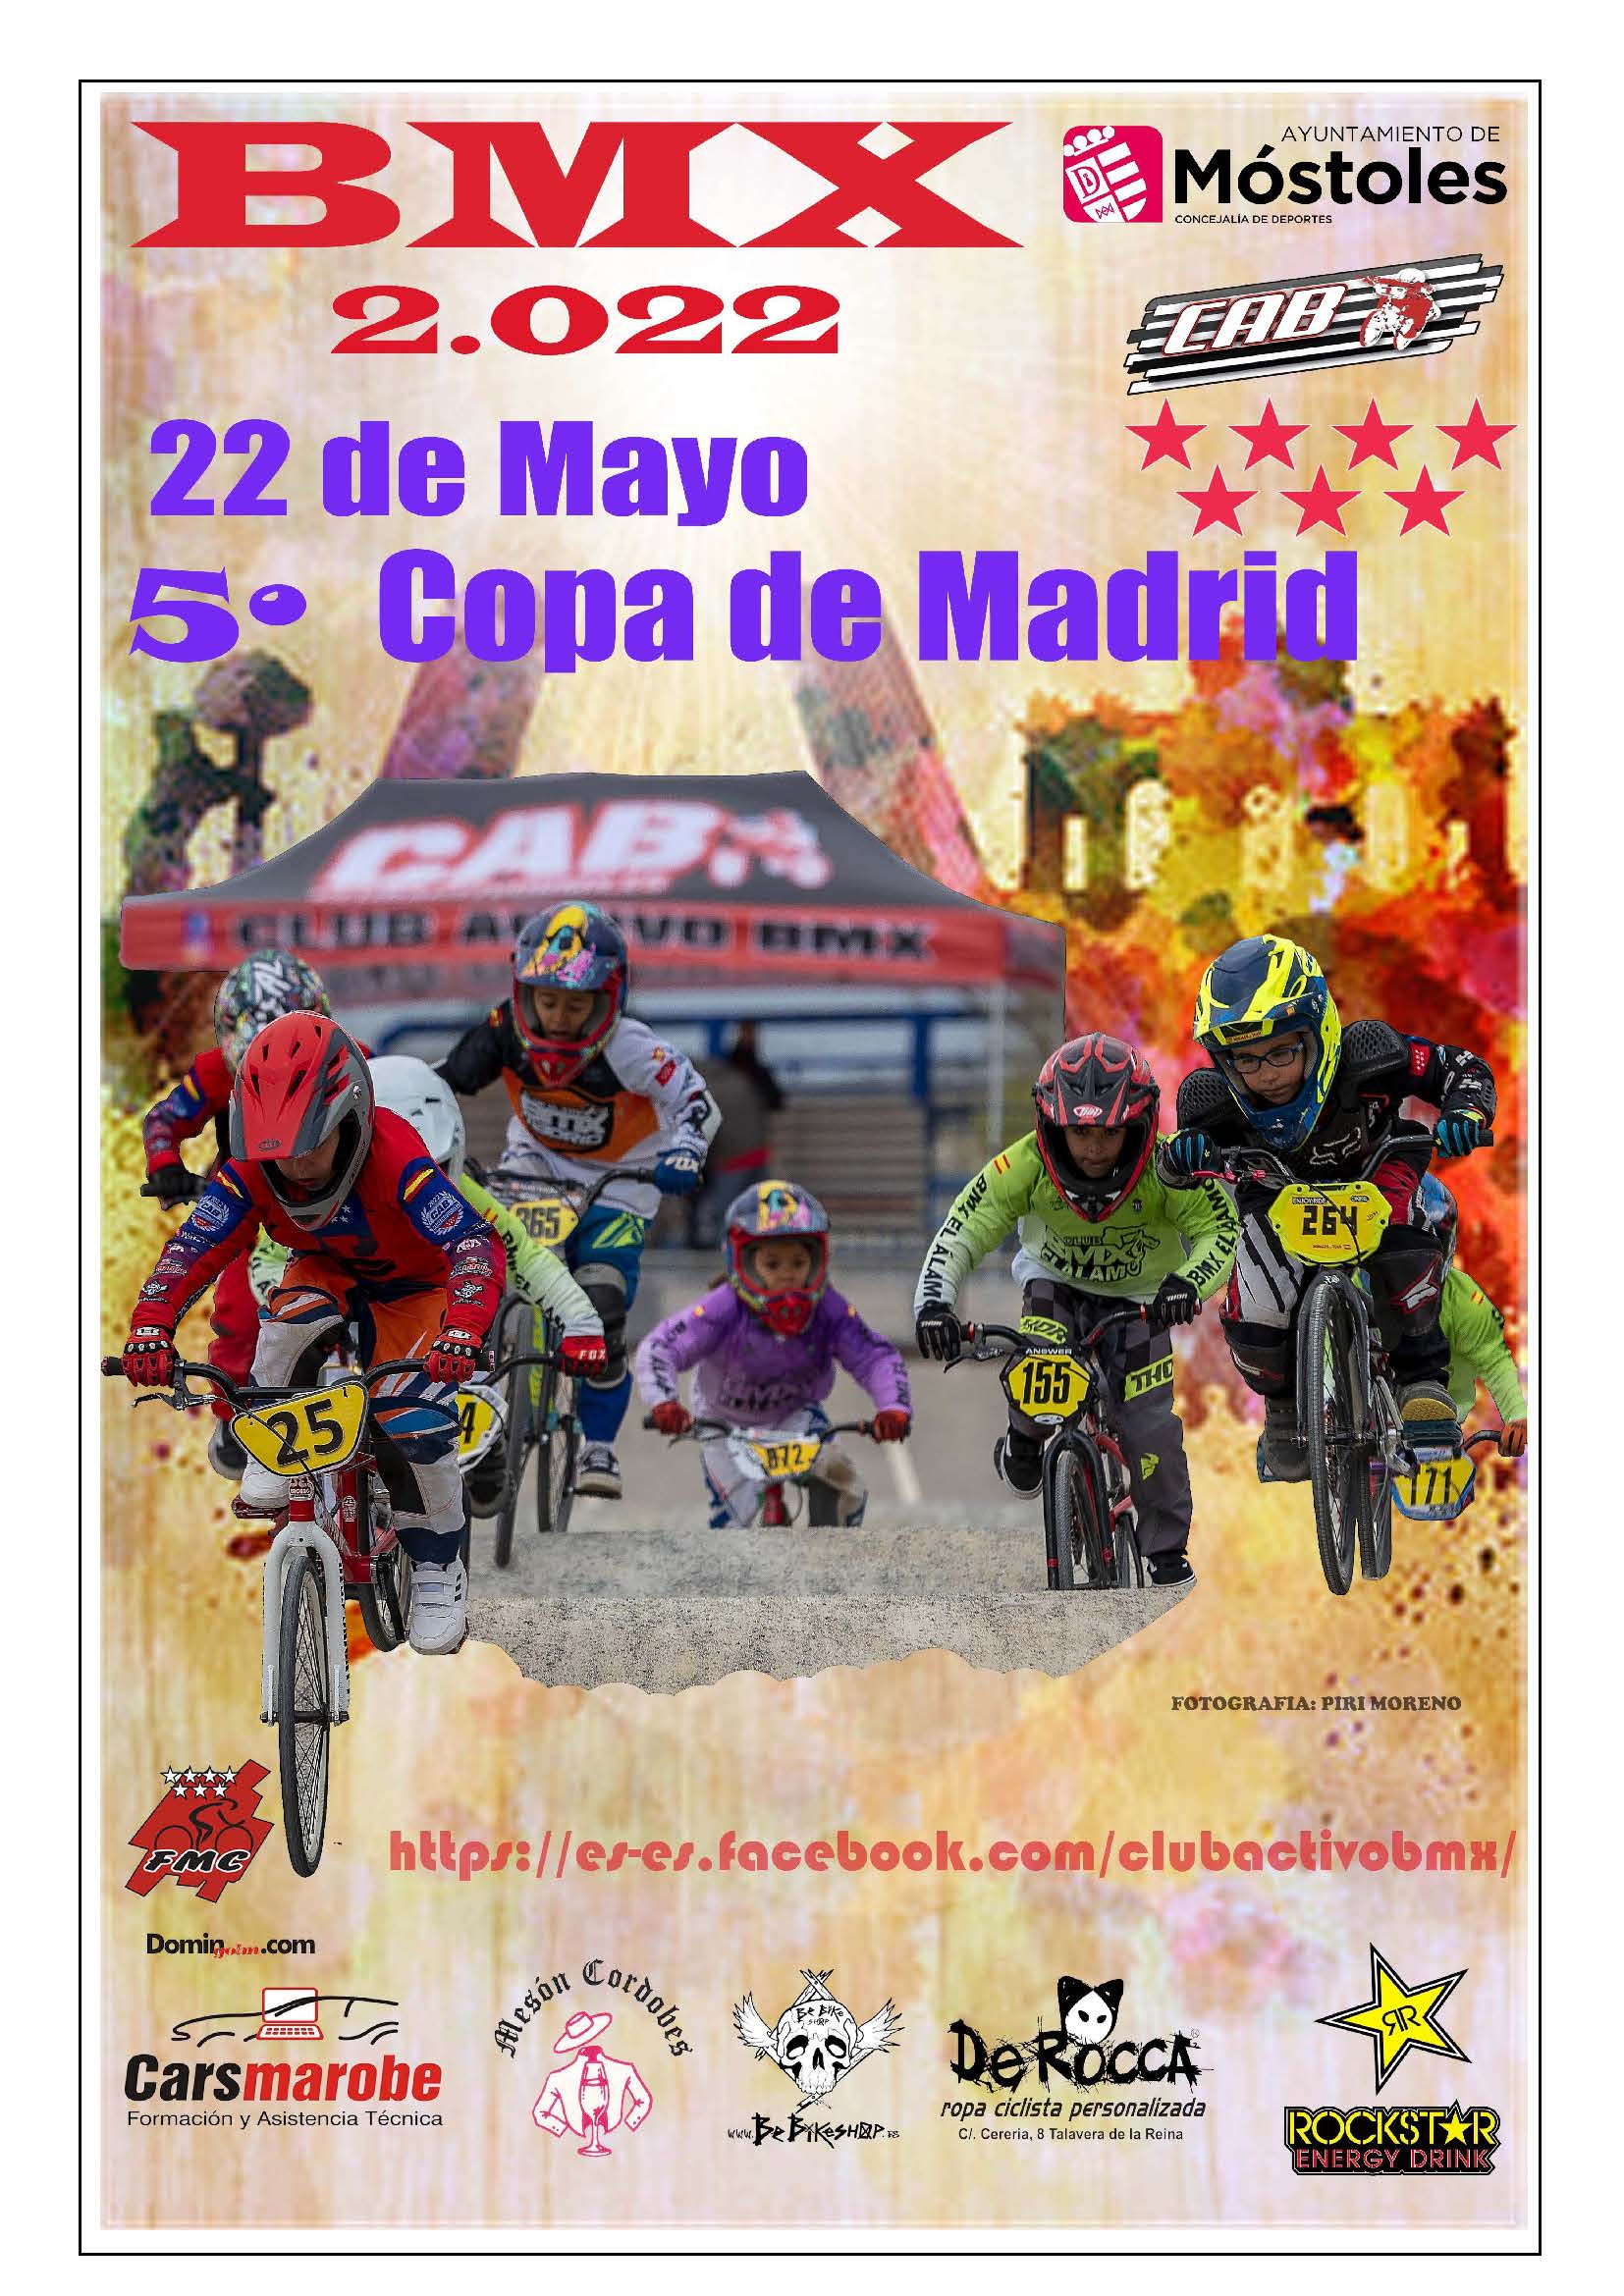 La Copa de Madrid de BMX vivirá su desenlace final el 22 de Mayo en Móstoles